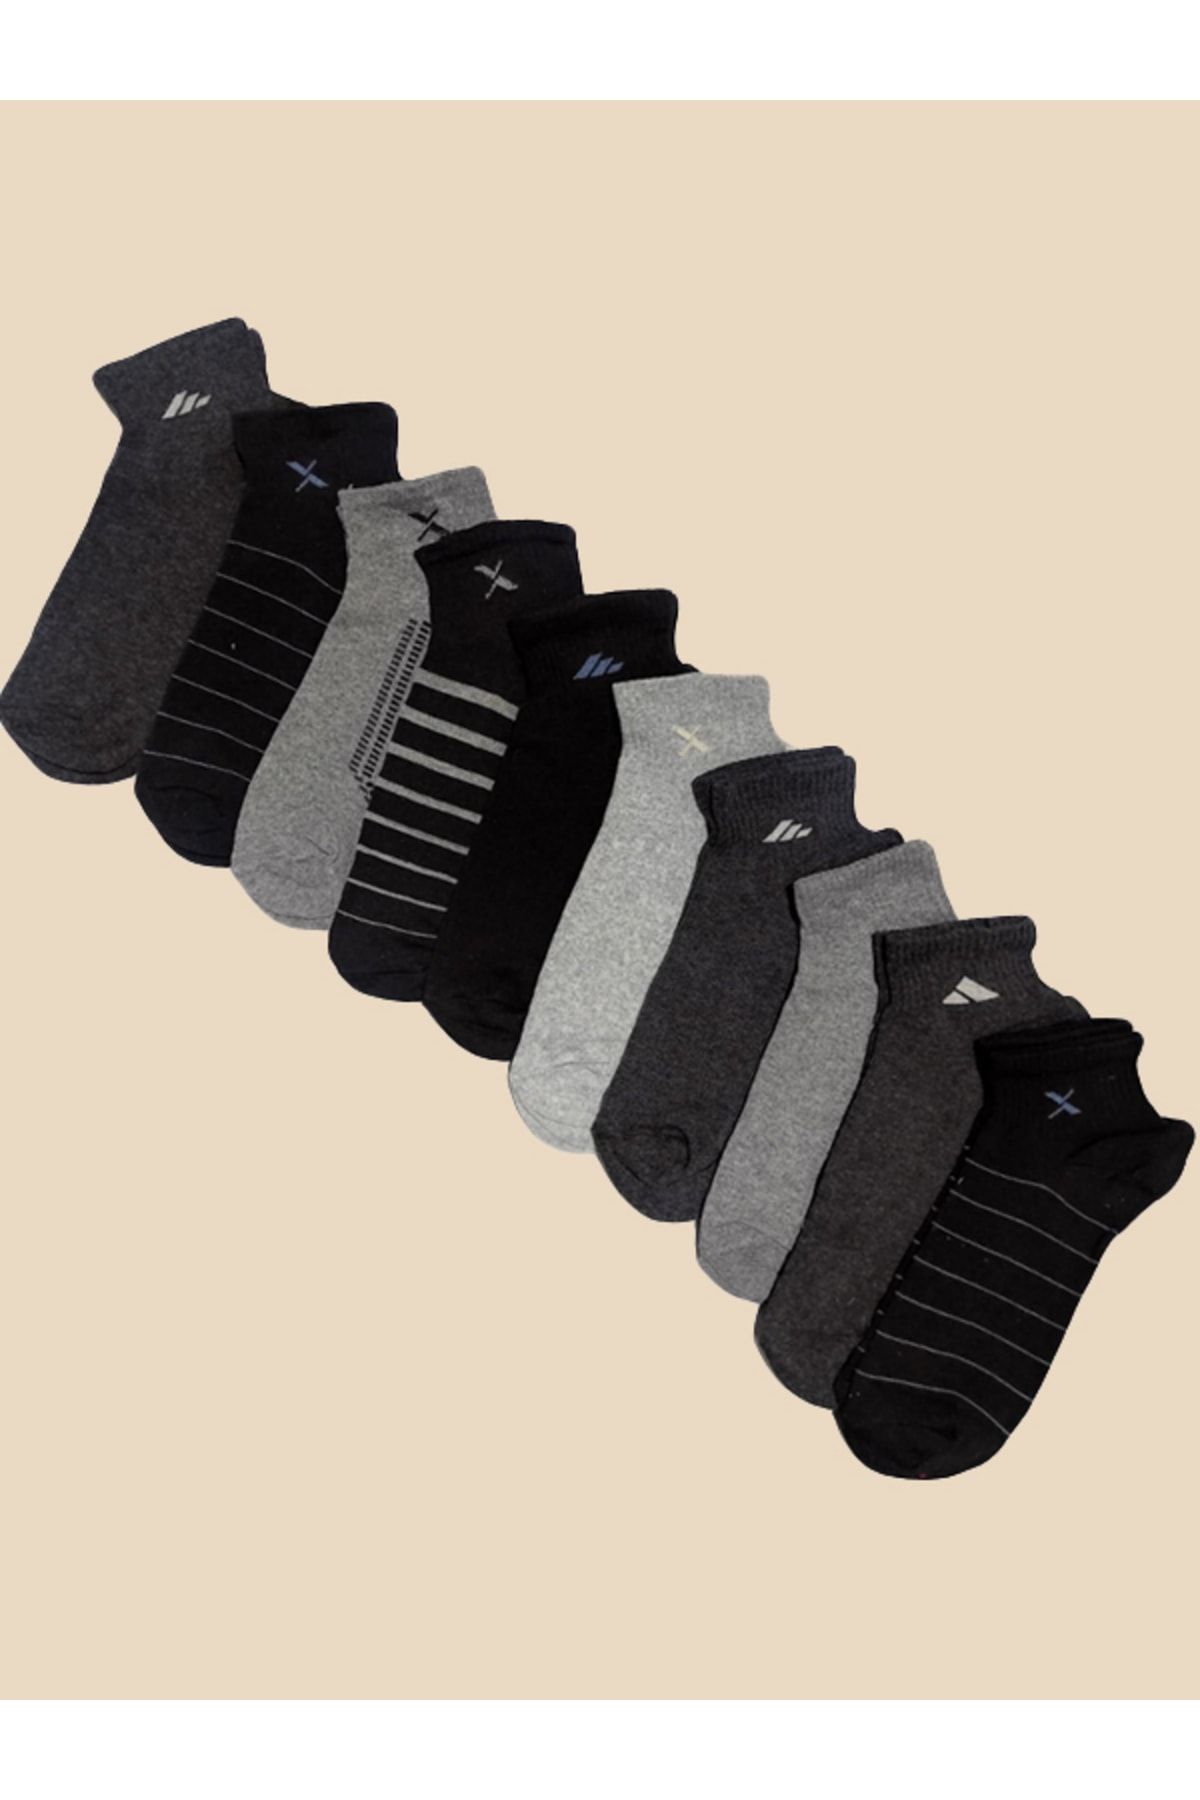 SOYTEMİZ Karışık Renk Erkek Patik Çorap Koton ( 8 Çift )